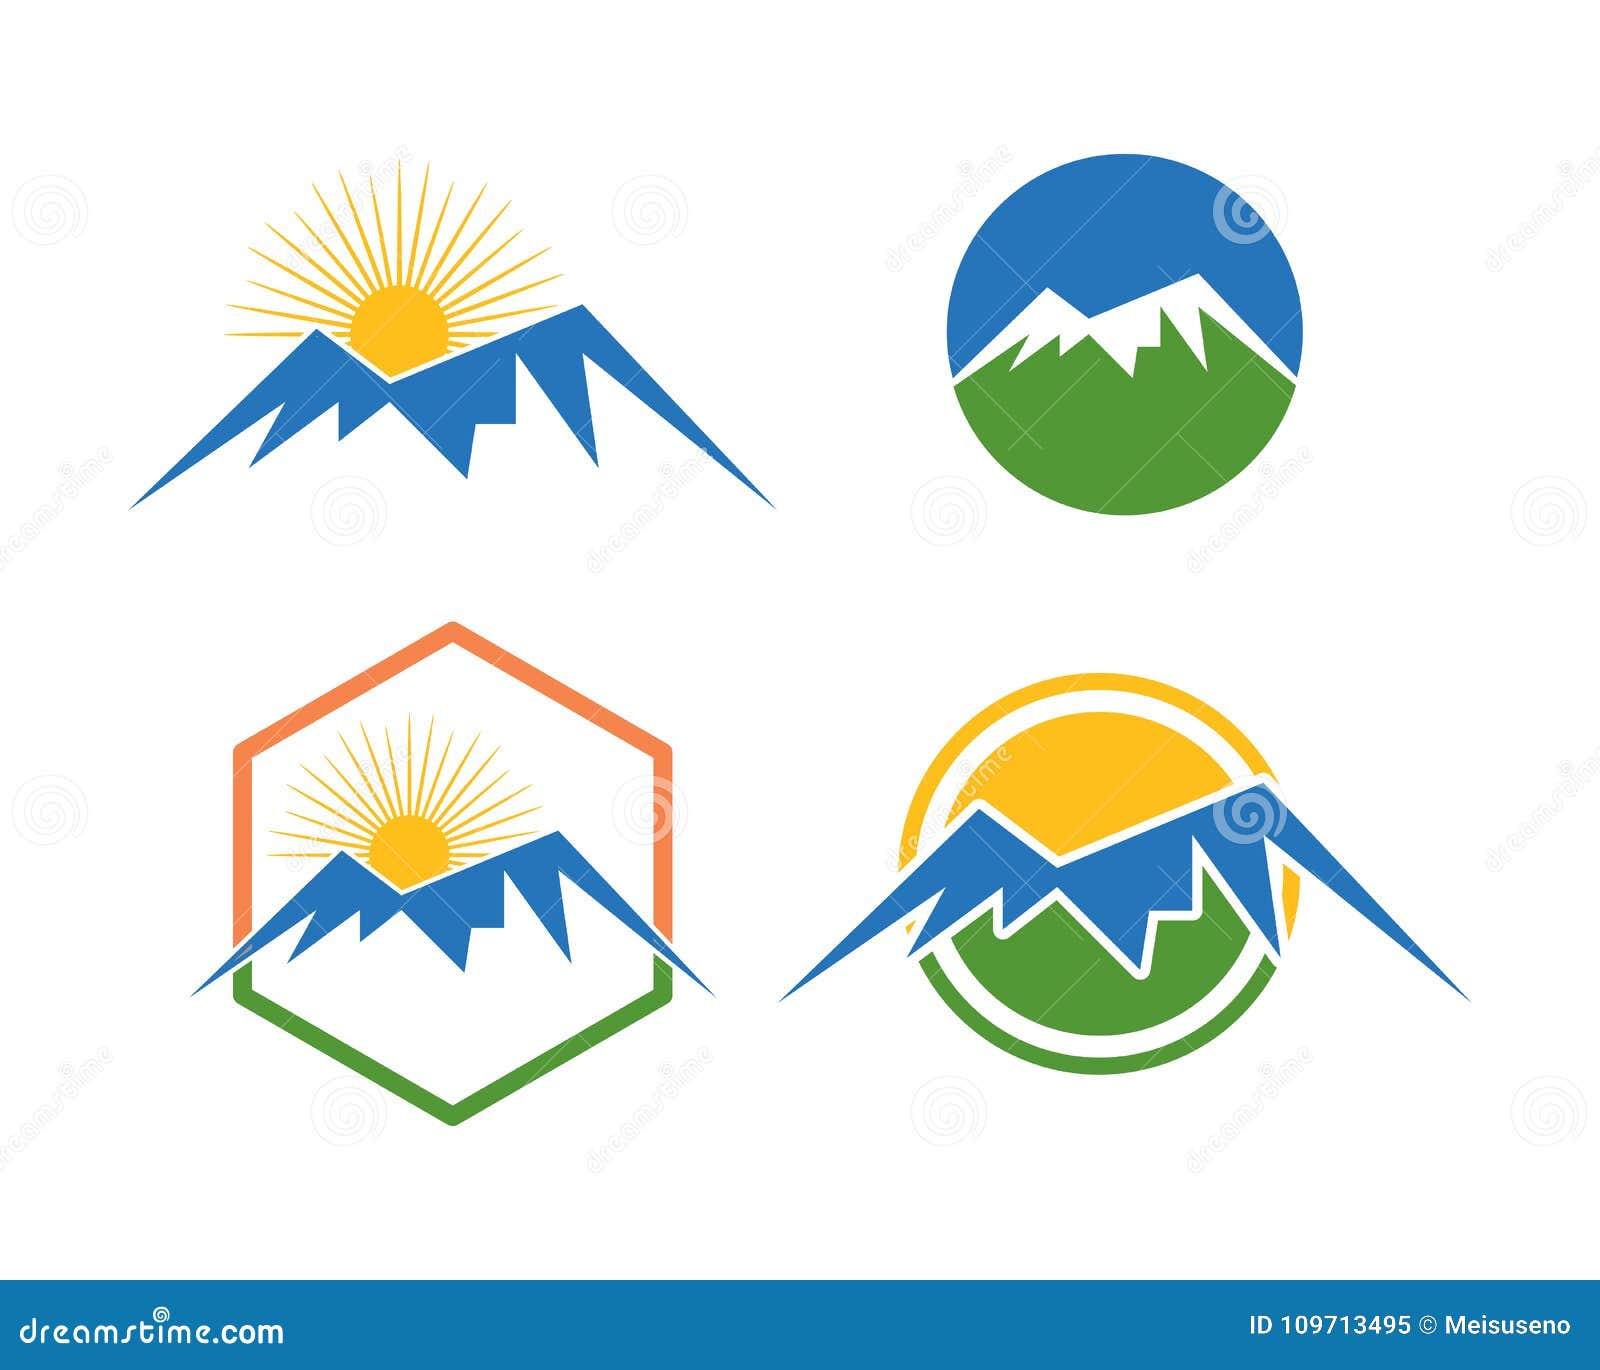 Samling för berglogomall. Är är ett symbol som förbinds med naturen, speciellt bergen och, passande att symbolisera sportsymboler liksom att fotvandra eller att klättra